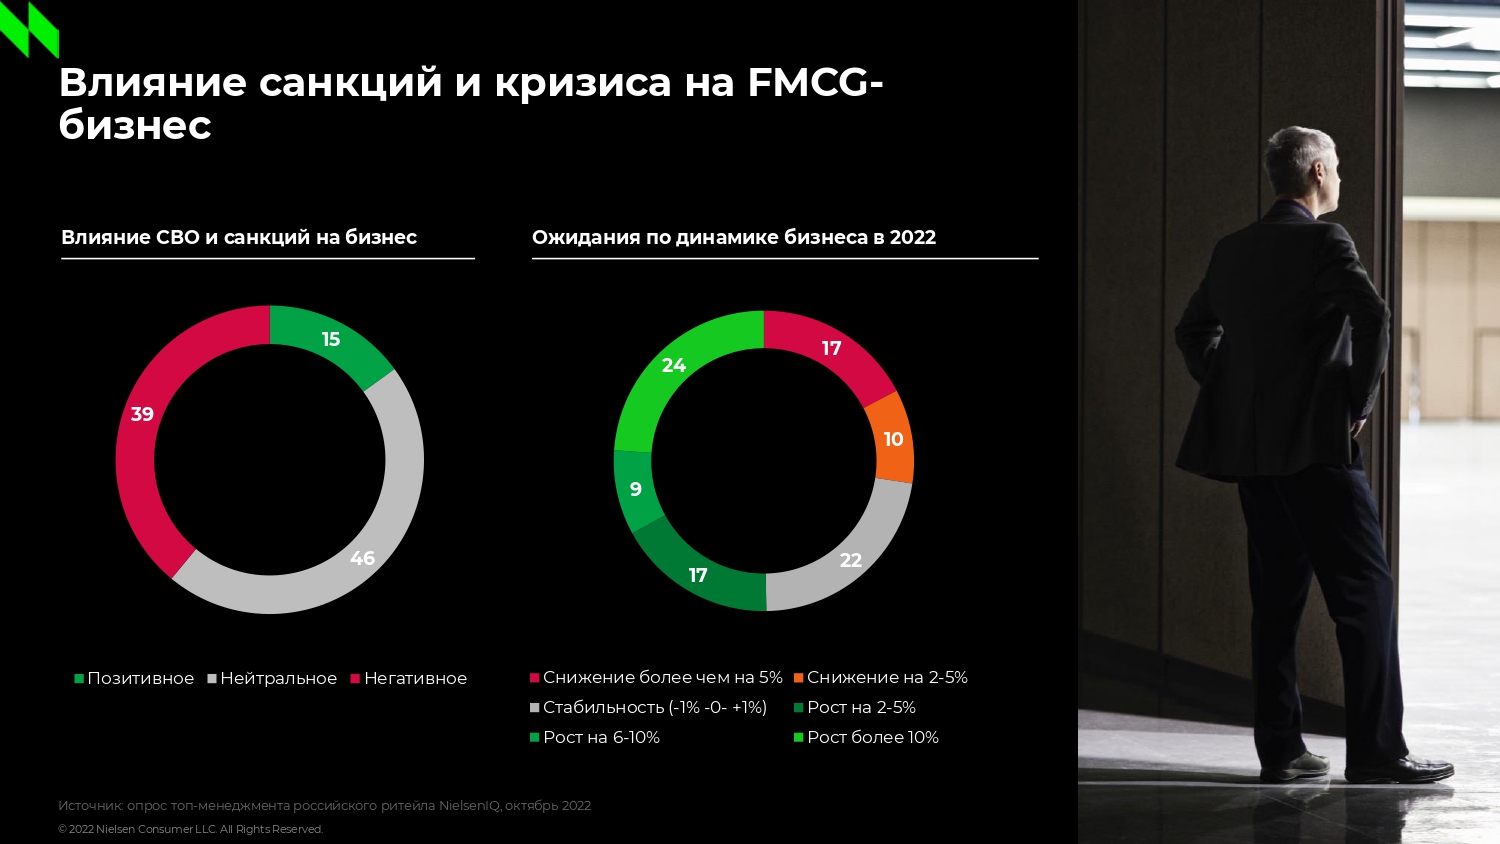 Ожидания относительно динамики бизнеса среди руководителей российского ритейла и FMCG-производителей за год снизились | Анализ рынков